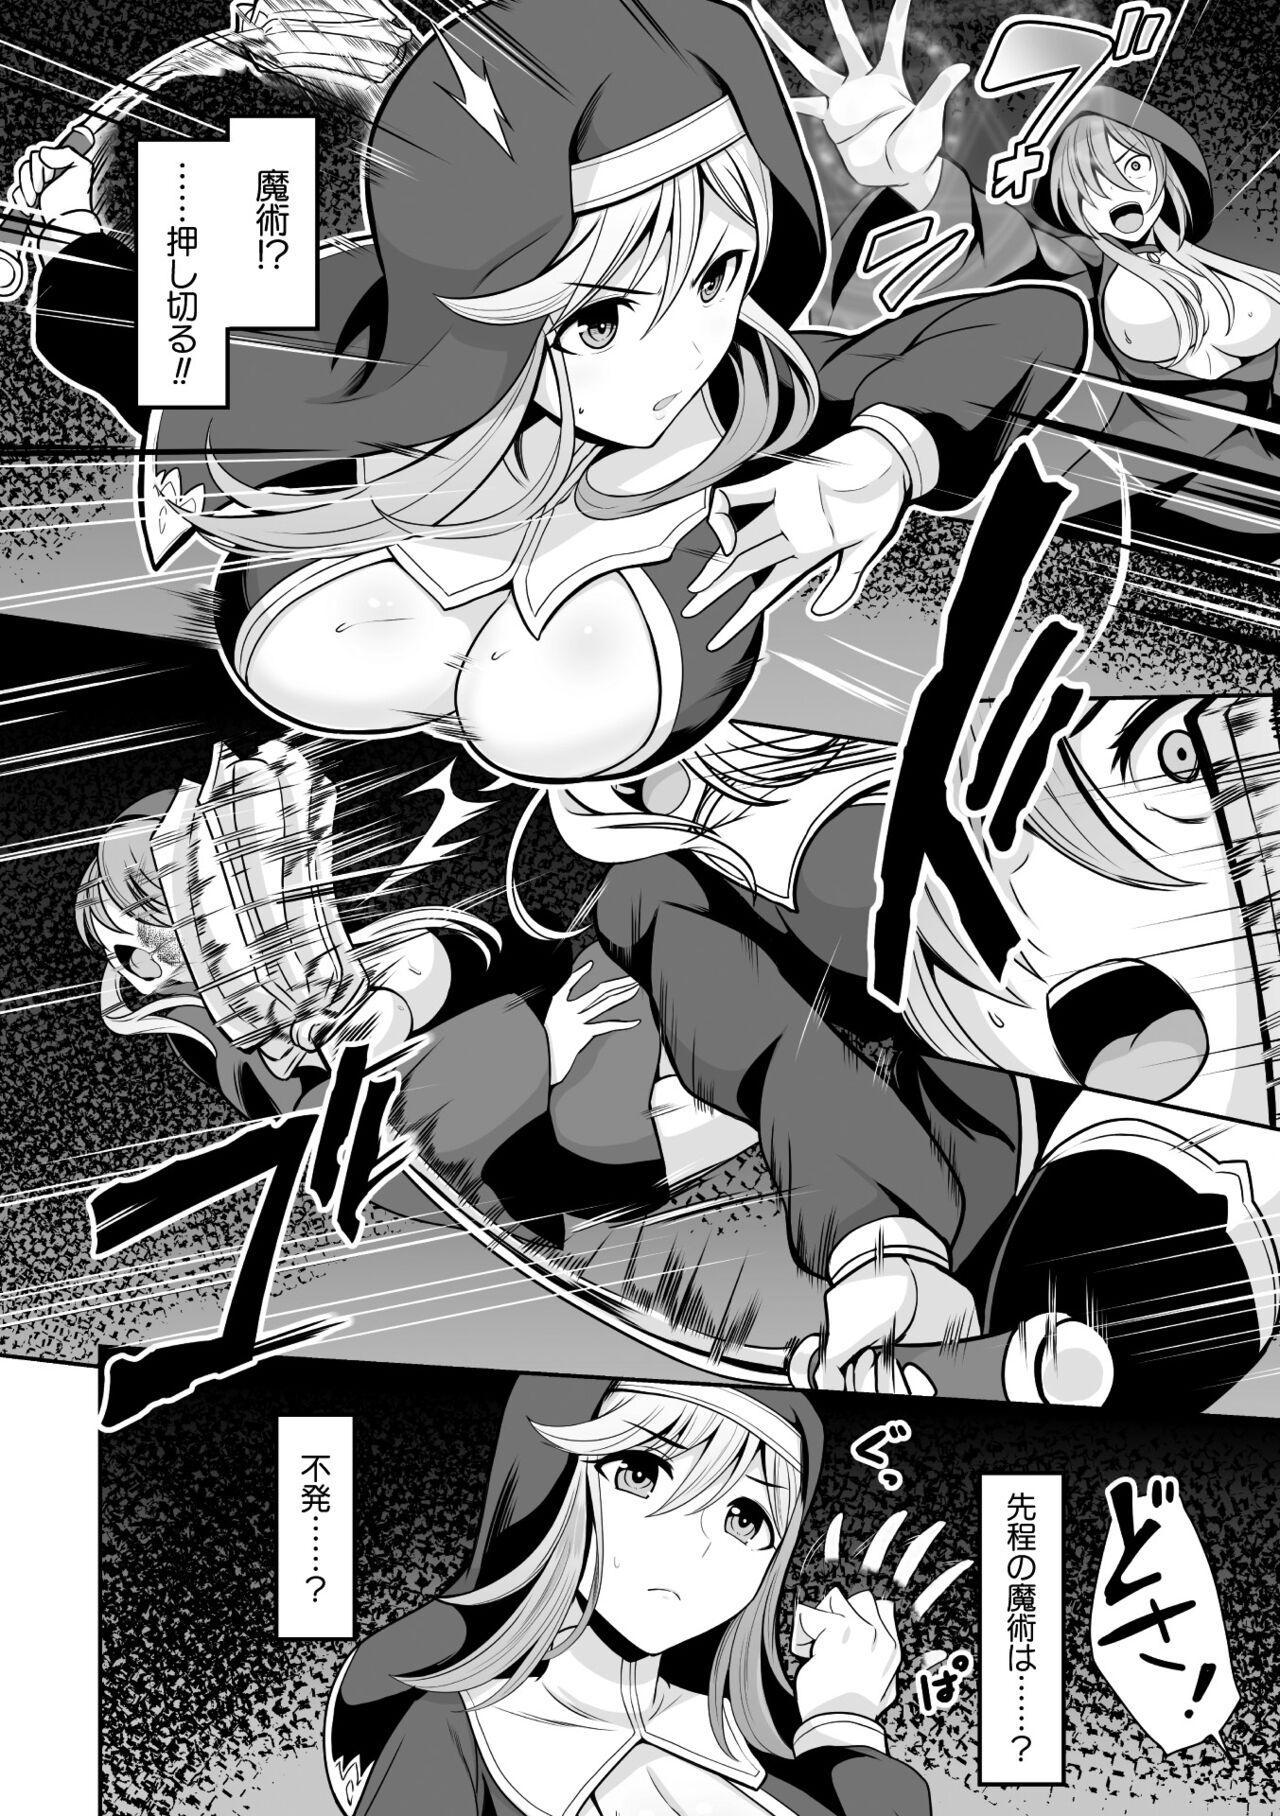 2D Comic Magazine Hyoui de! Saimin de! Heroine Inranka Daisakusen Vol. 2 3